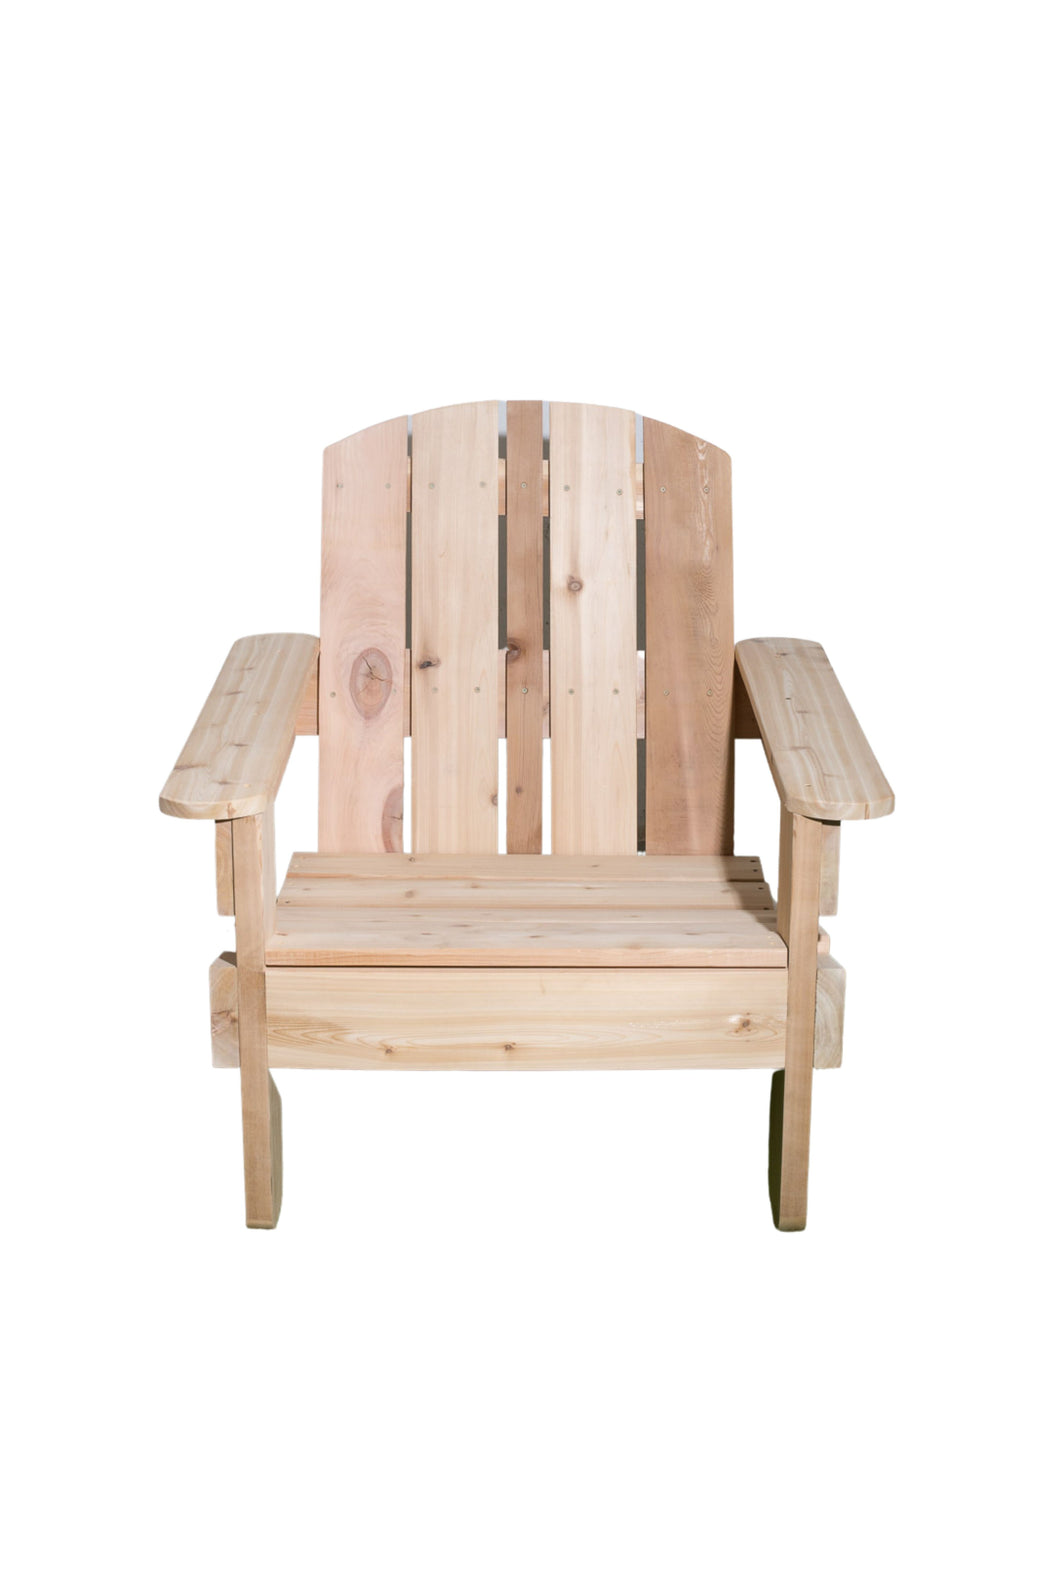 Cedar Patio Chair